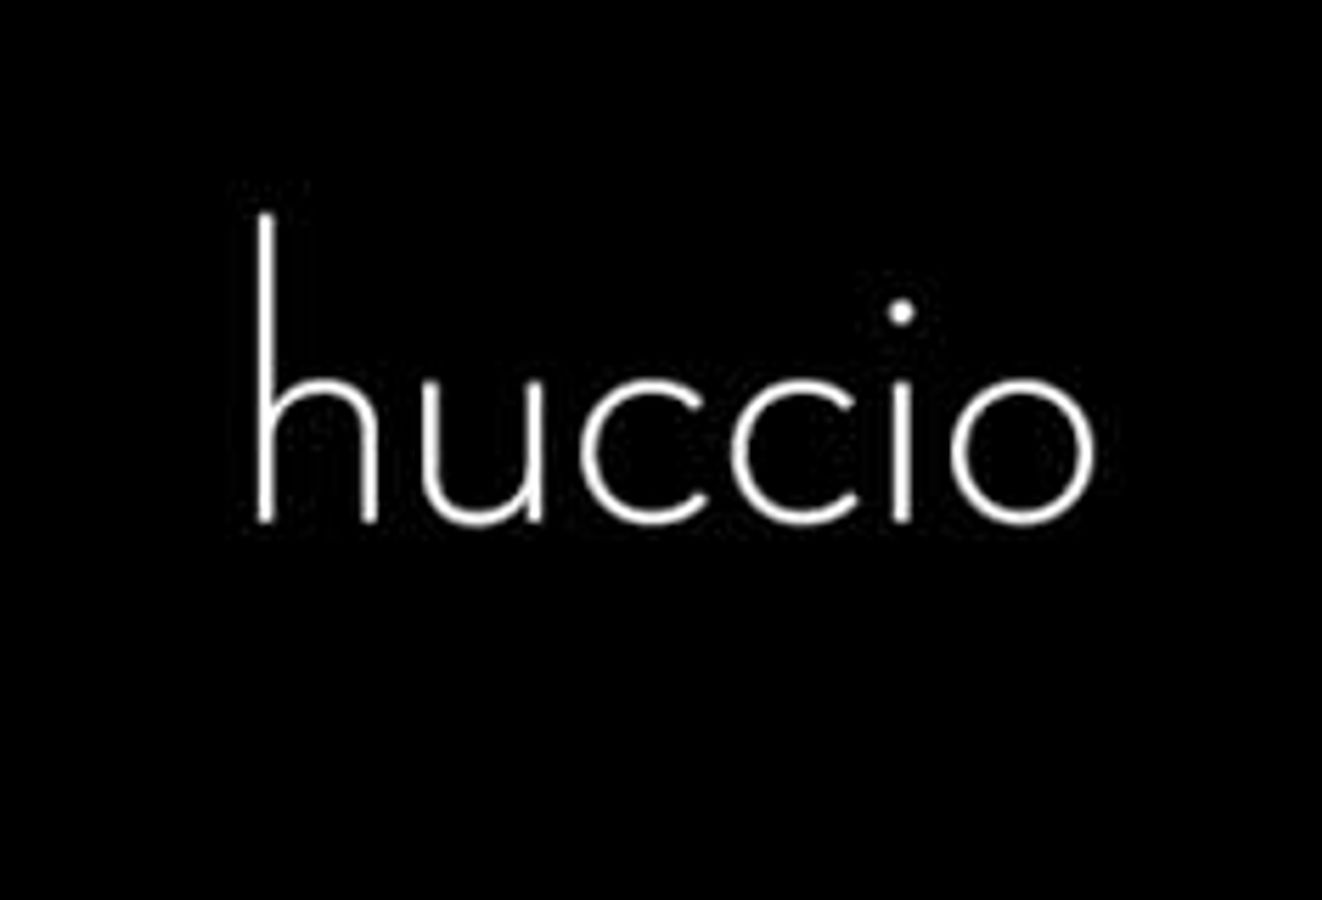 Huccio